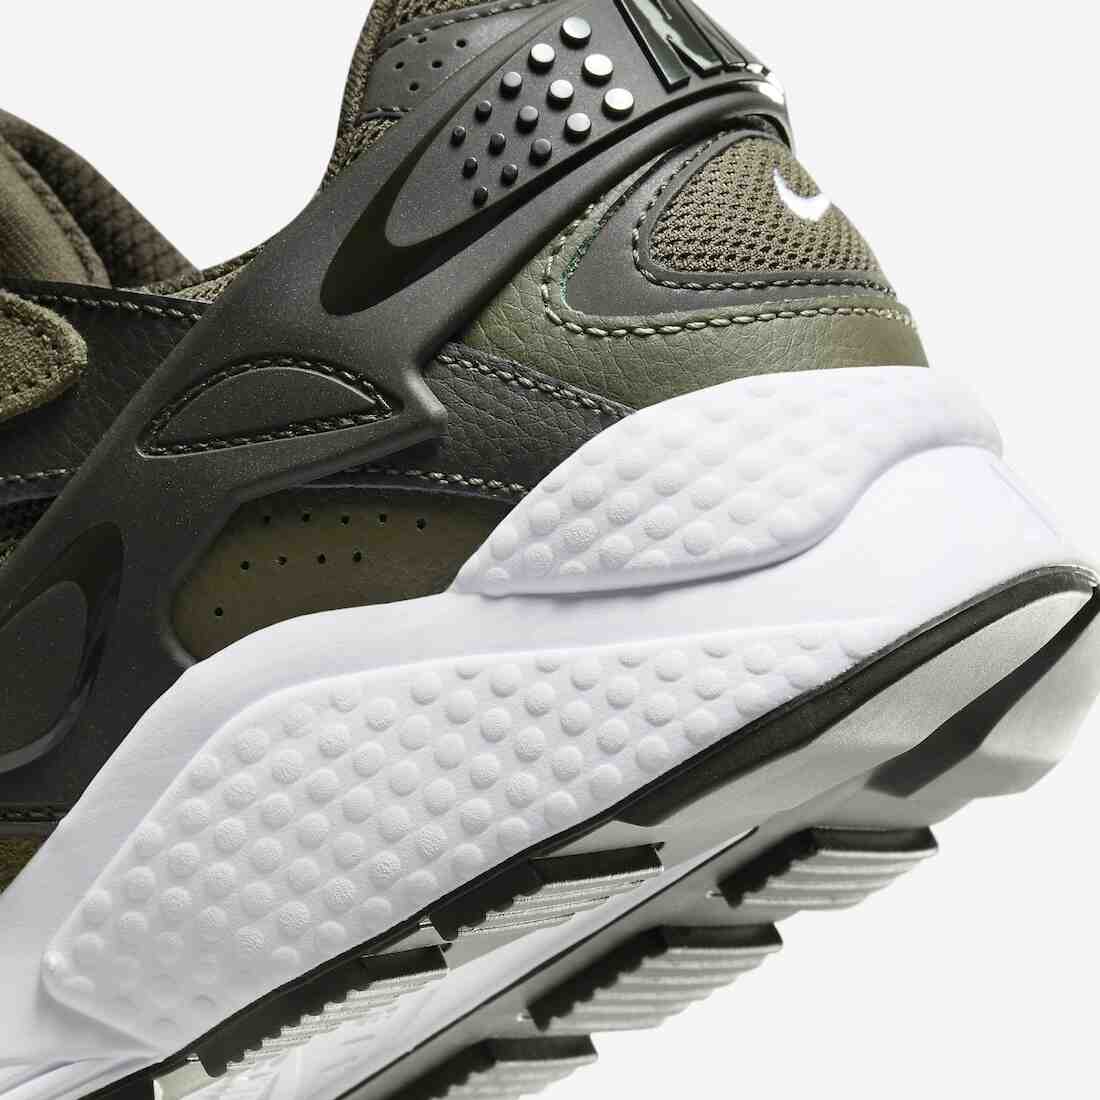 运动鞋, 跑步鞋, 耐克, Nike Air Huarache, Nike Air, Huarache - 耐克气垫 Huarache 跑步鞋“军橄榄绿”将于10月20日发售。